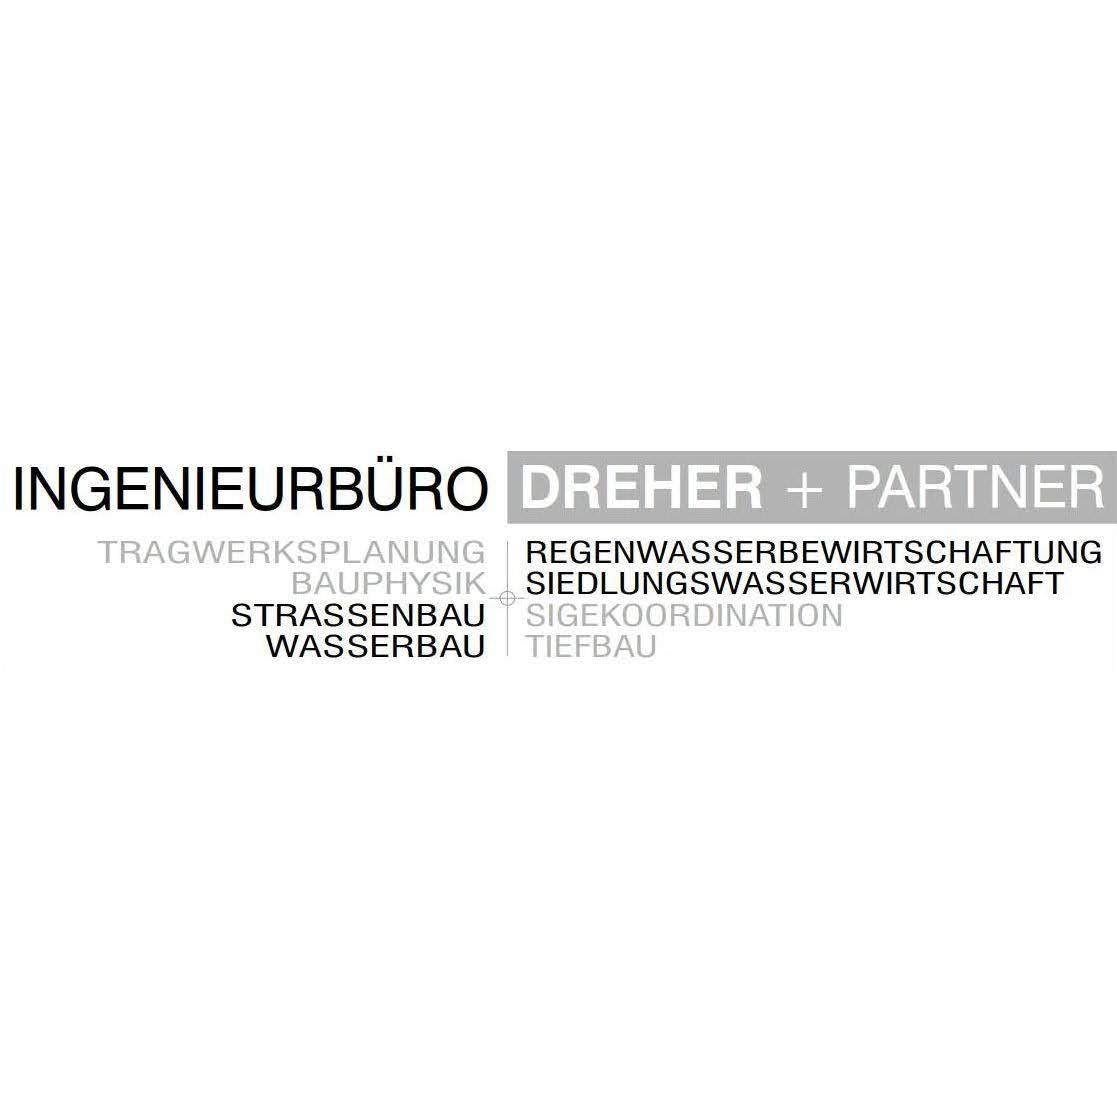 Ingenieurbüro Dreher + Partner